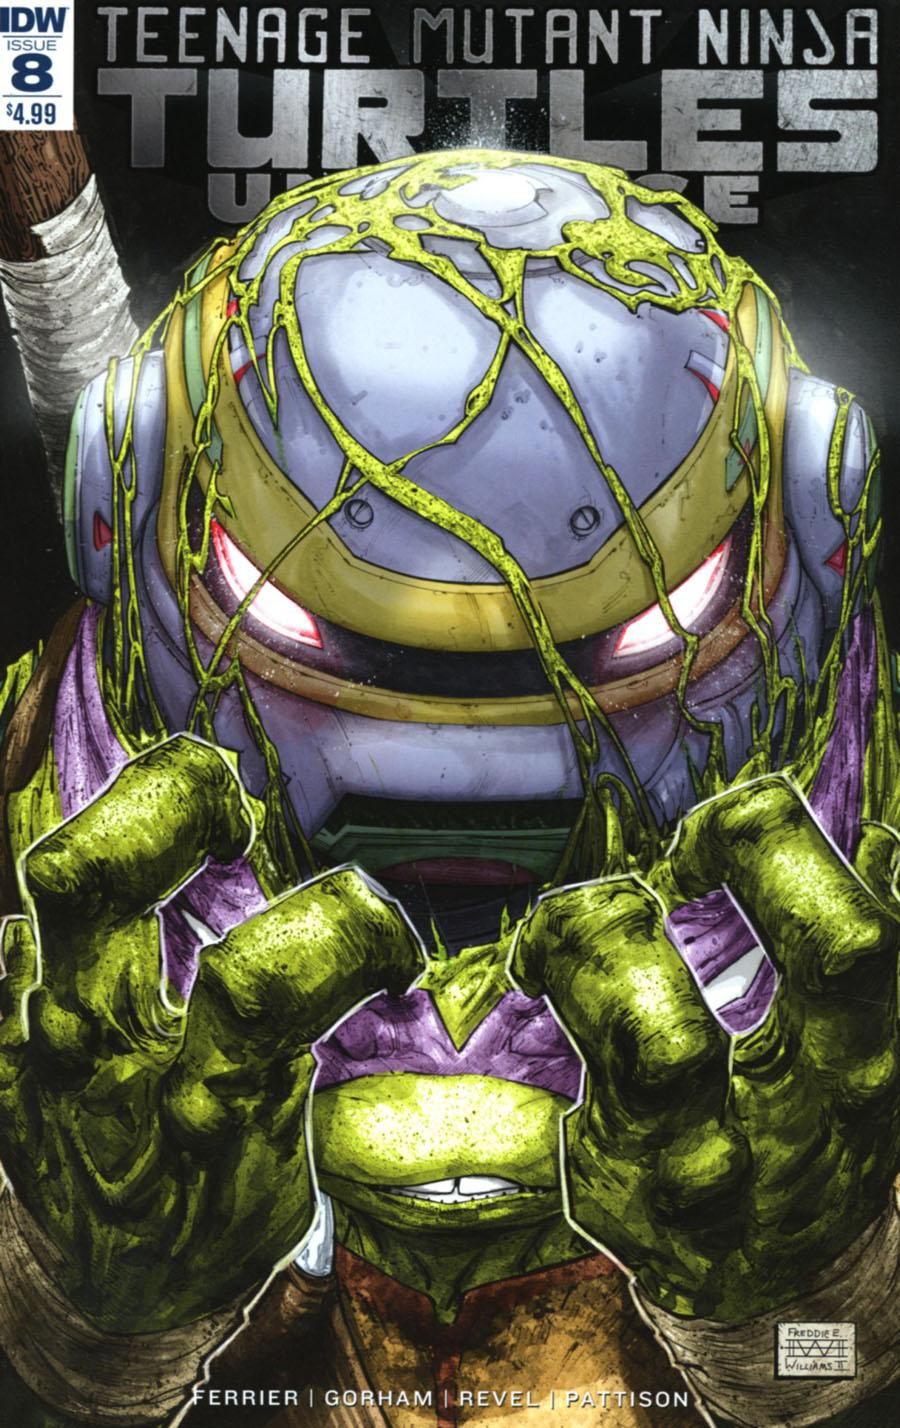 Teenage Mutant Ninja Turtles Universe Vol. 1 #8